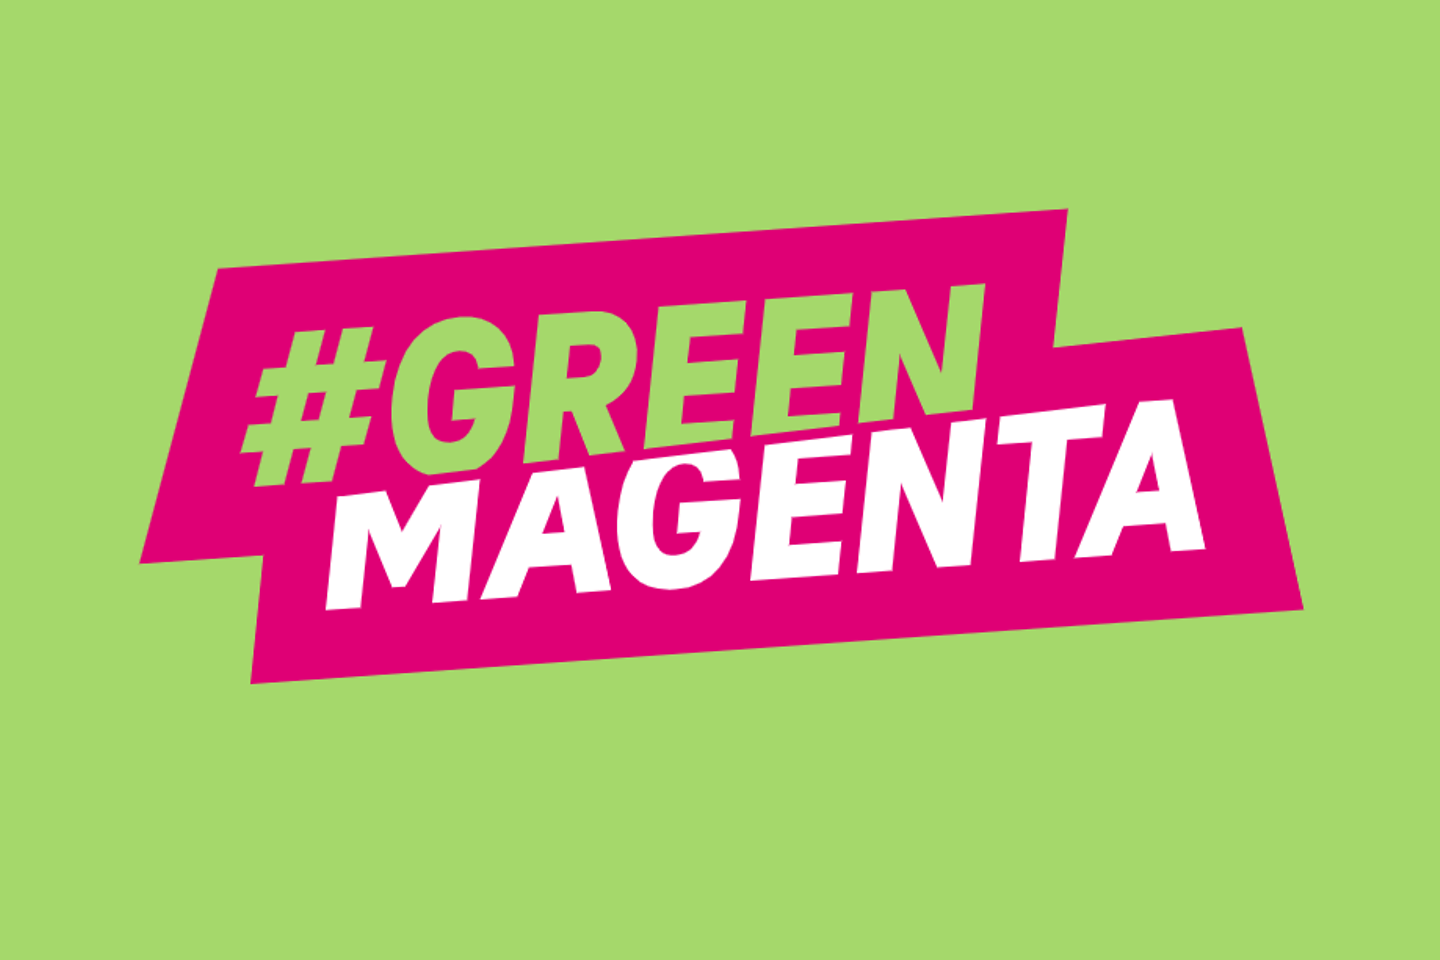 Het logo #Green Magenta op een groene achtergrond.